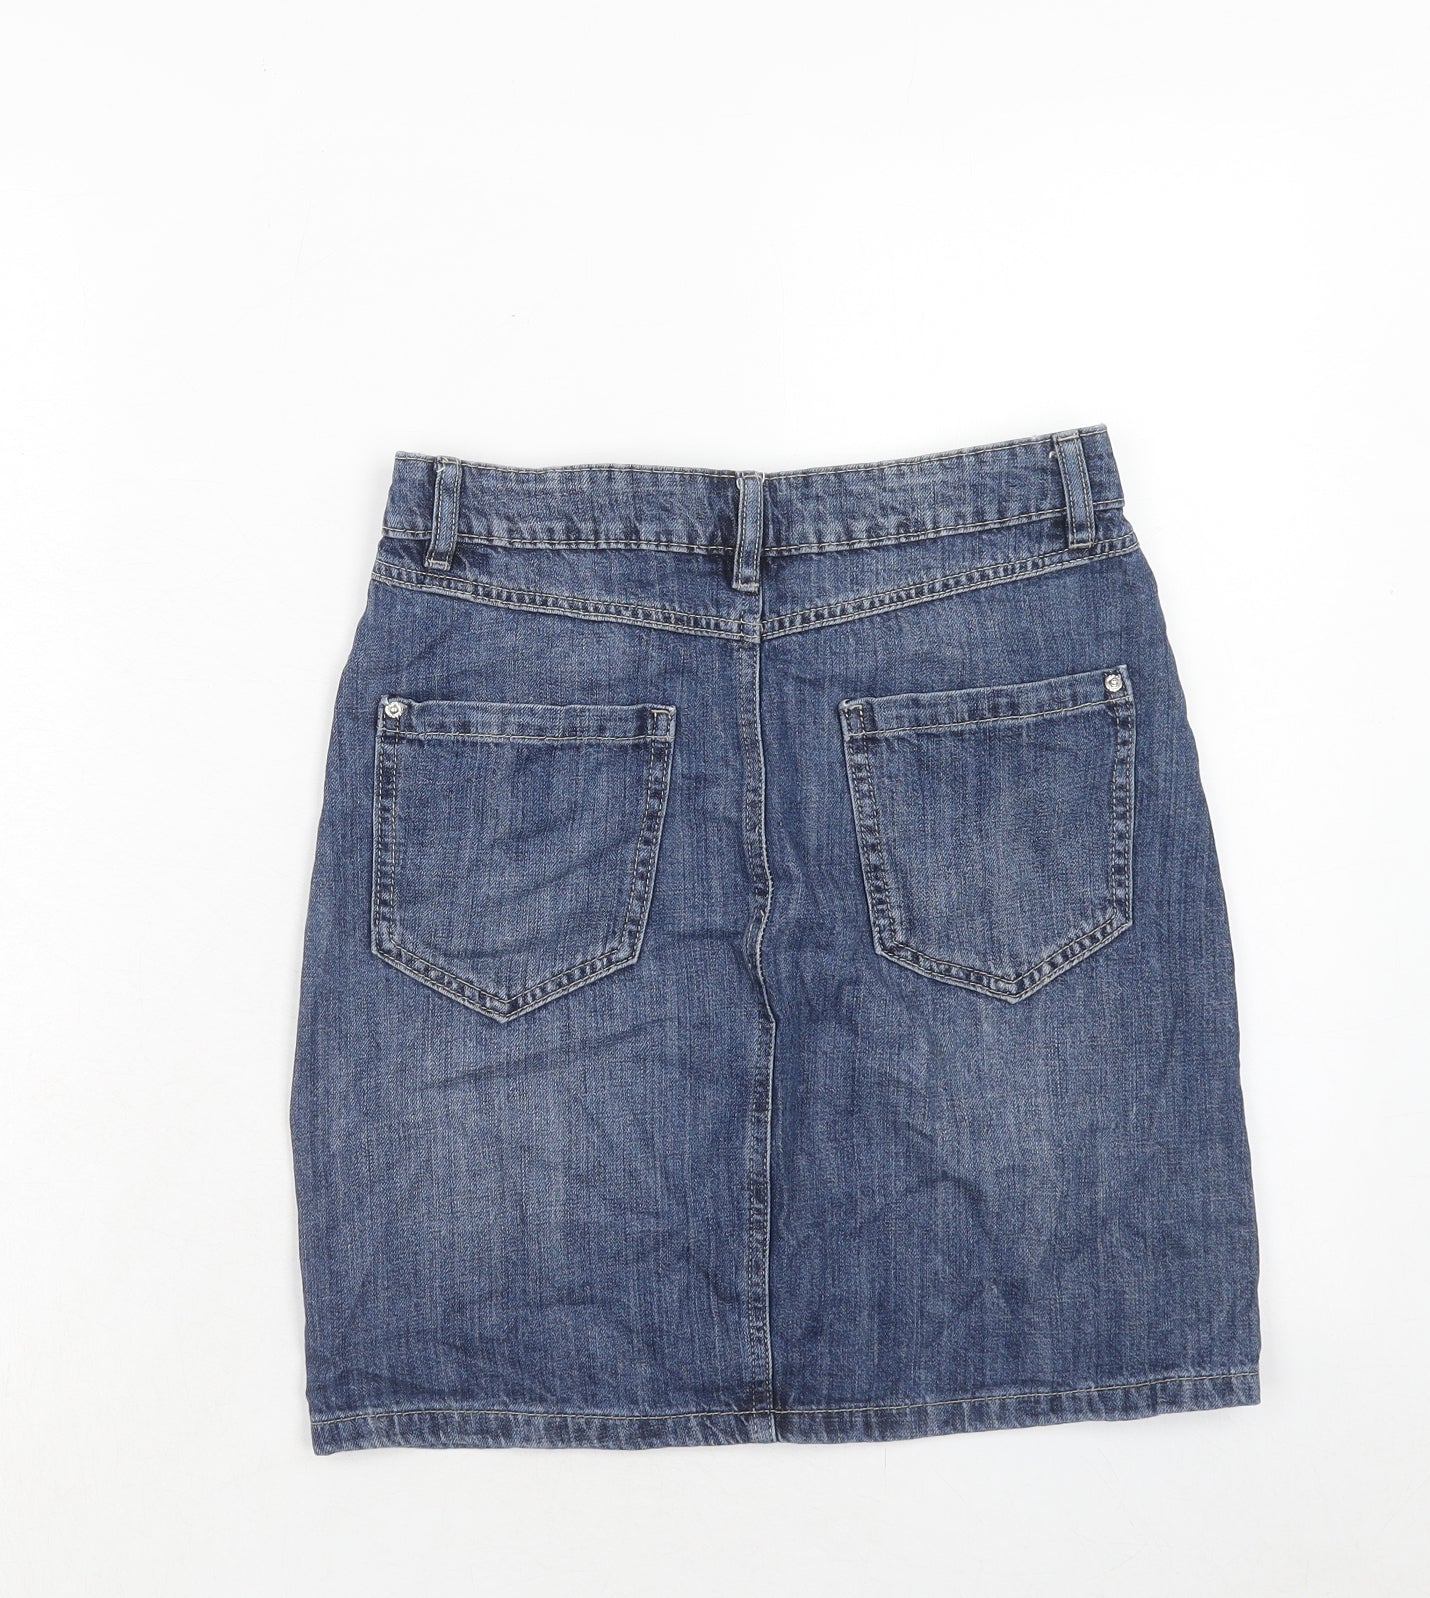 NEXT Womens Blue Cotton A-Line Skirt Size 6 Zip